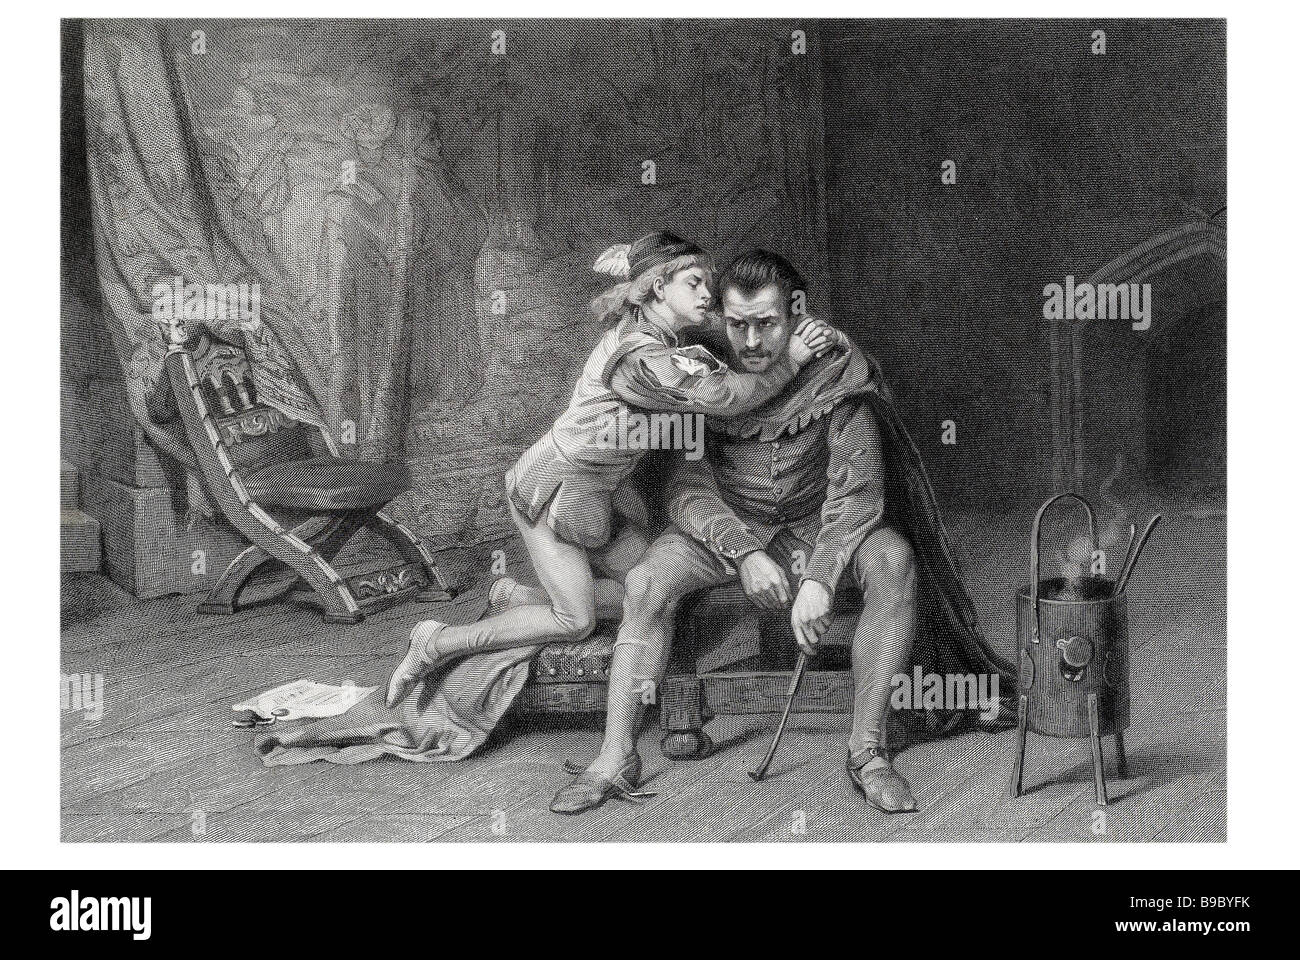 Prinz Arthur und Humbert die Leben und Tod von König John, ein Geschichte-Theaterstück von William Shakespeare, dramatisiert die Herrschaft von König J Stockfoto